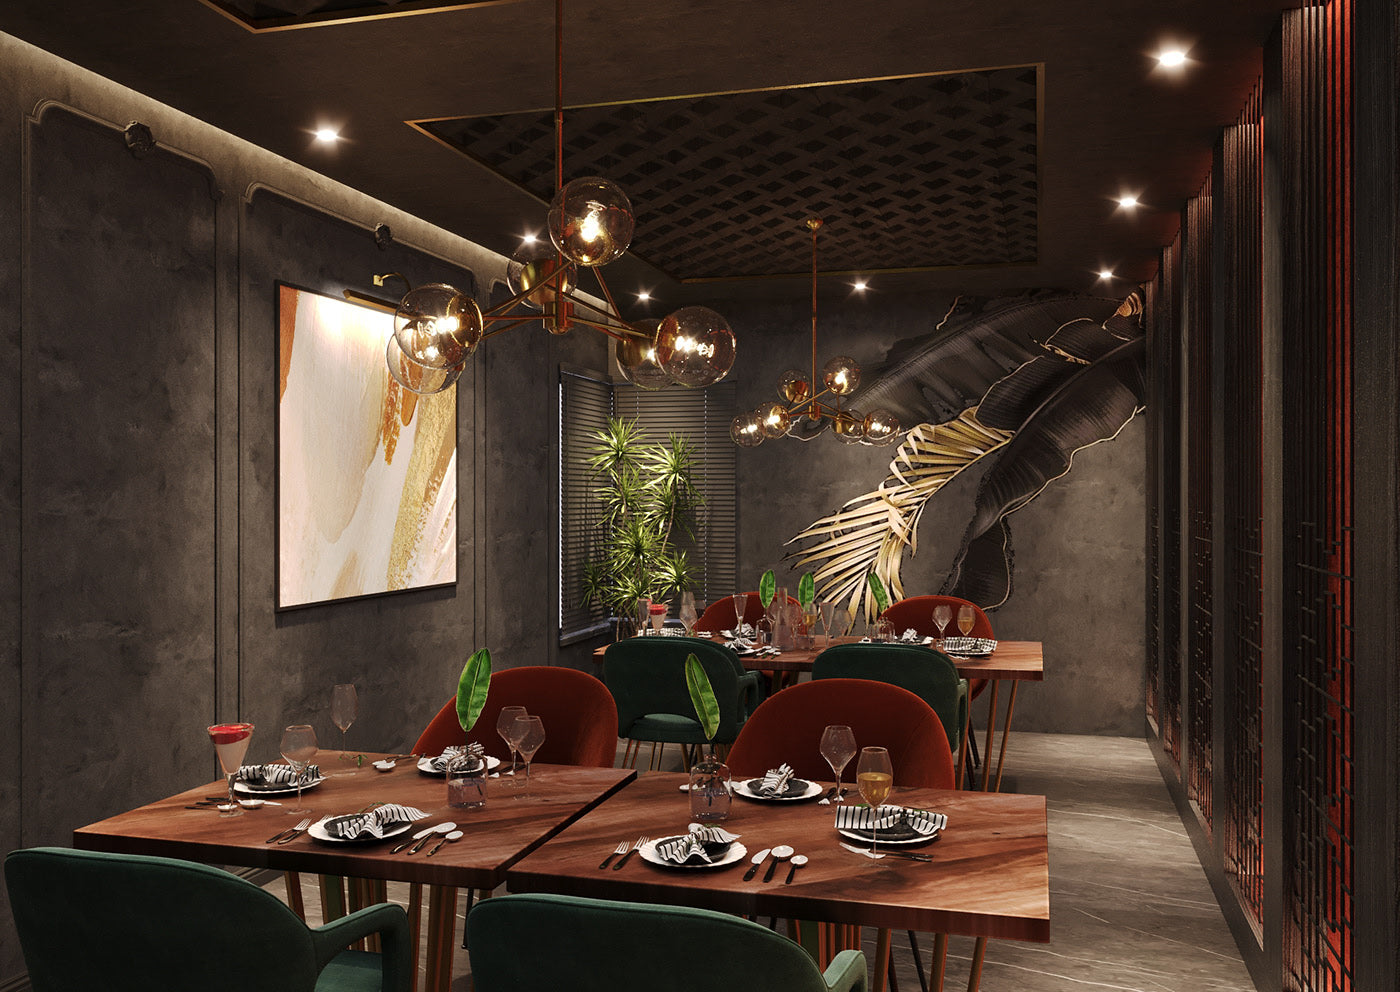 FINE DINE RESTURANTE Interior Design & Decorations Services in Dubai